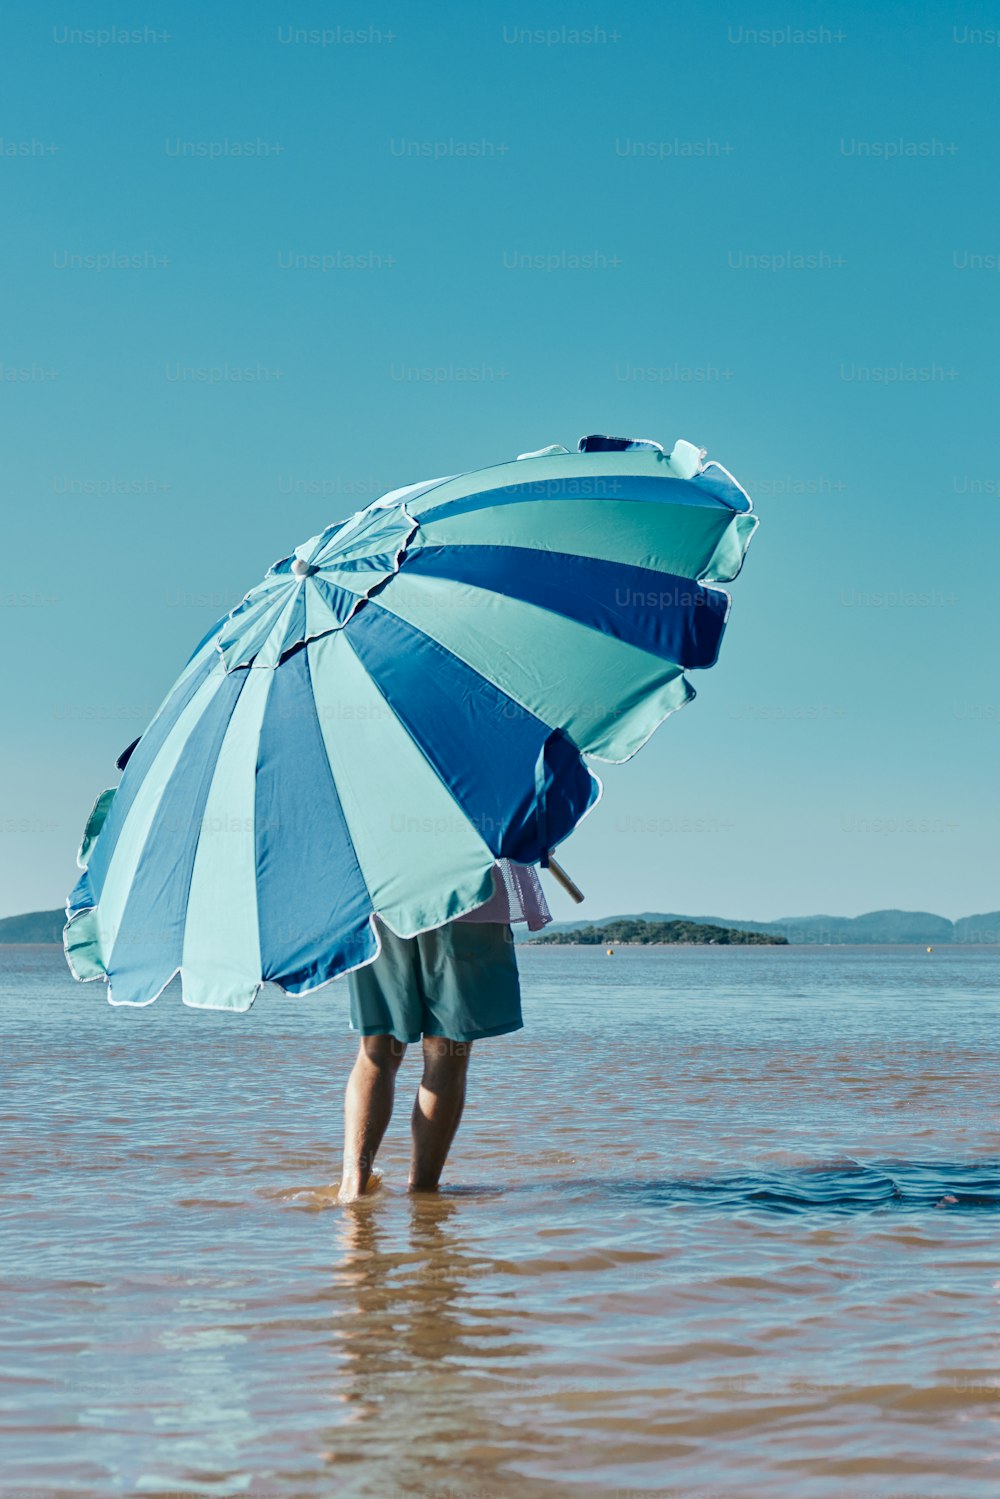 eine Person, die mit einem Regenschirm im Wasser steht